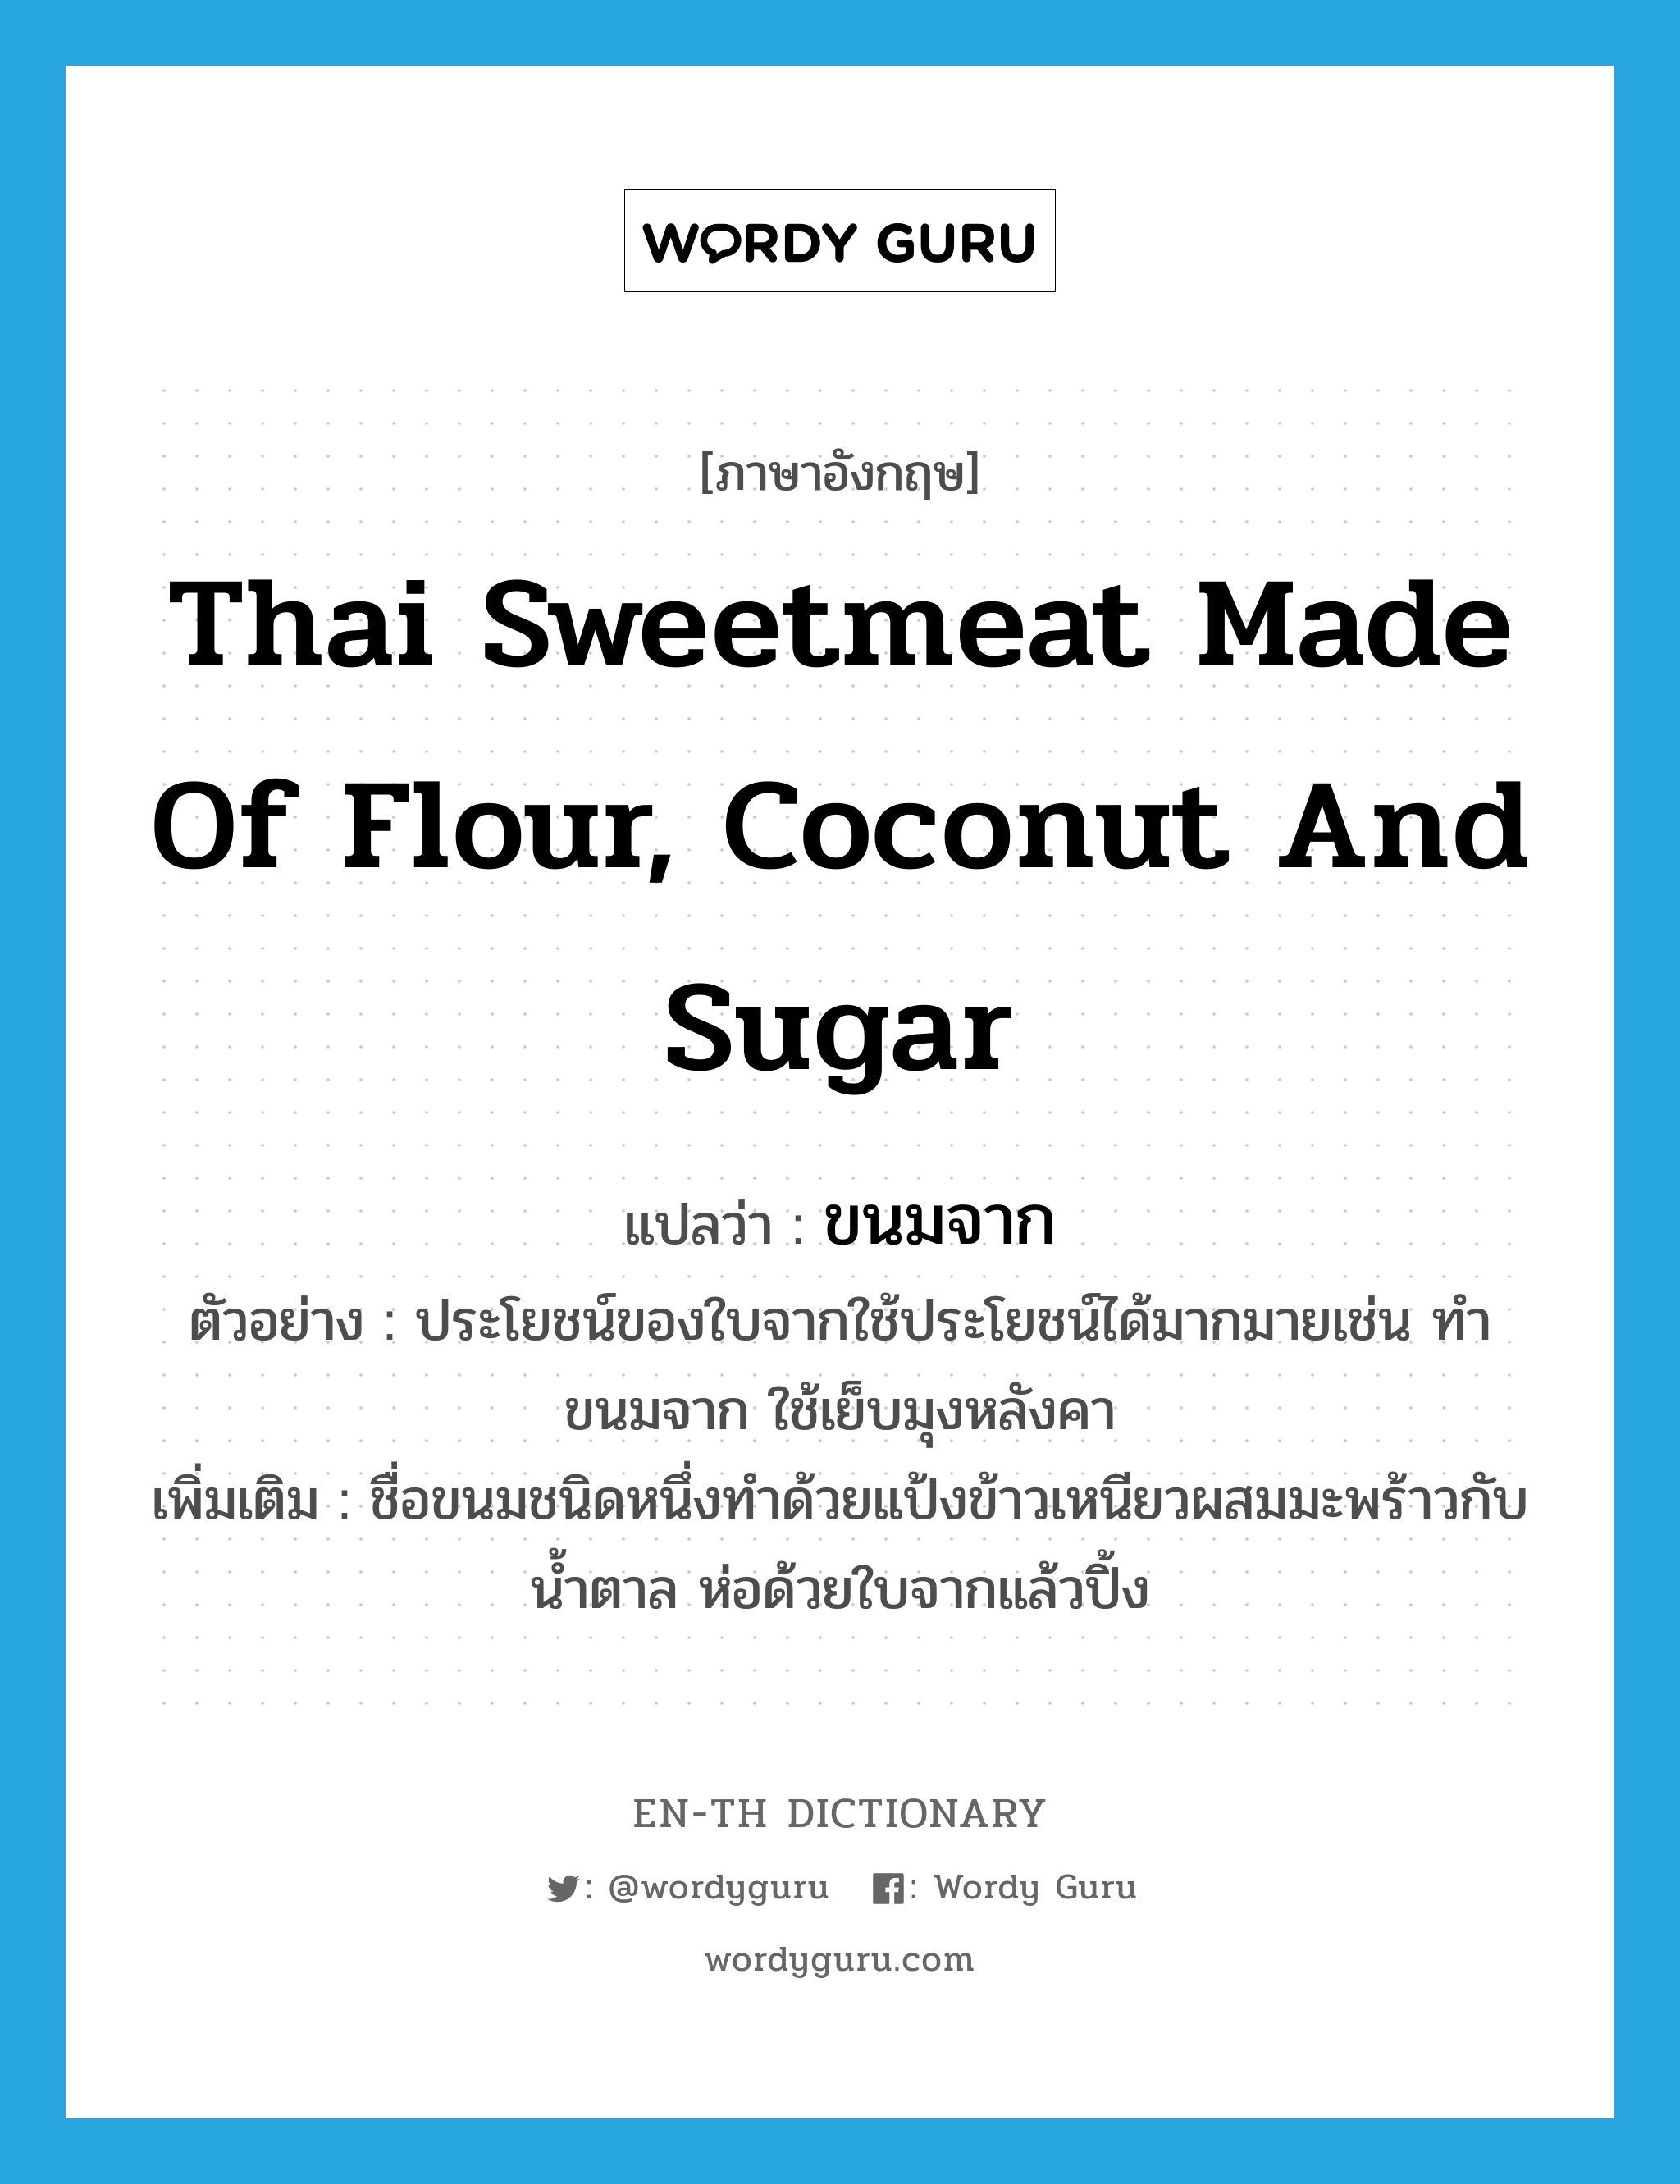 Thai sweetmeat made of flour, coconut and sugar แปลว่า?, คำศัพท์ภาษาอังกฤษ Thai sweetmeat made of flour, coconut and sugar แปลว่า ขนมจาก ประเภท N ตัวอย่าง ประโยชน์ของใบจากใช้ประโยชน์ได้มากมายเช่น ทำขนมจาก ใช้เย็บมุงหลังคา เพิ่มเติม ชื่อขนมชนิดหนึ่งทำด้วยแป้งข้าวเหนียวผสมมะพร้าวกับน้ำตาล ห่อด้วยใบจากแล้วปิ้ง หมวด N